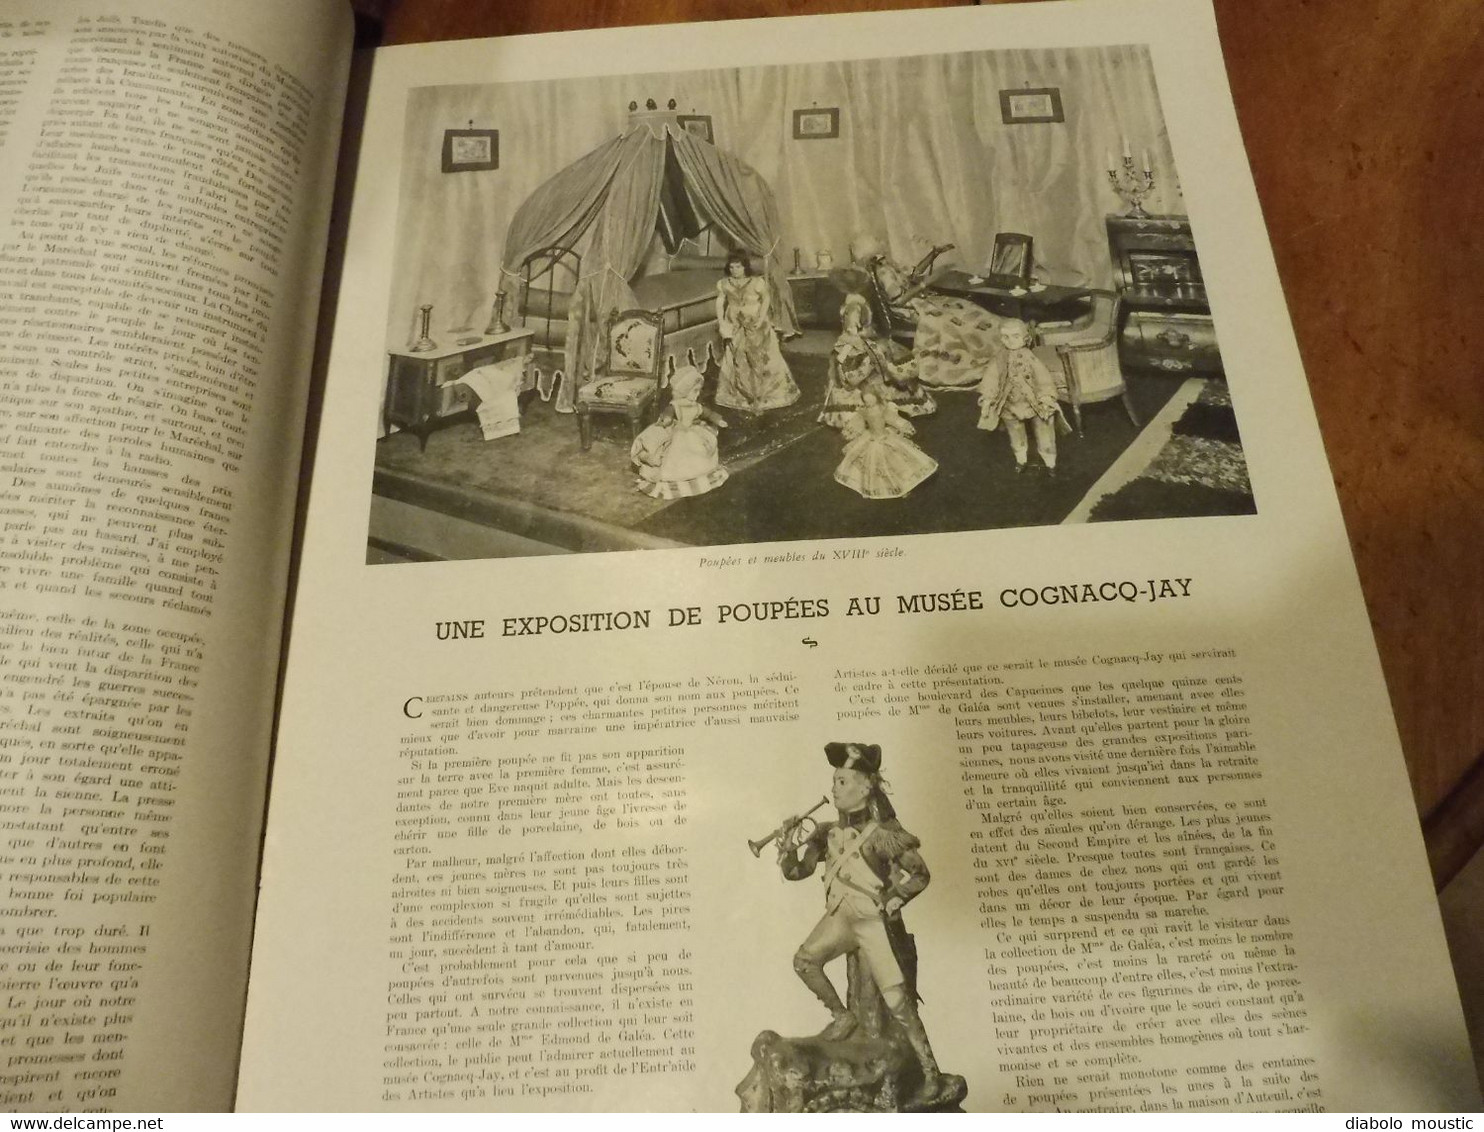 17-1-1942 : Exposition de poupées au musée Cognacg-Jay ; La télévision industrialisée ; Combat  Pieuvre entre Requin